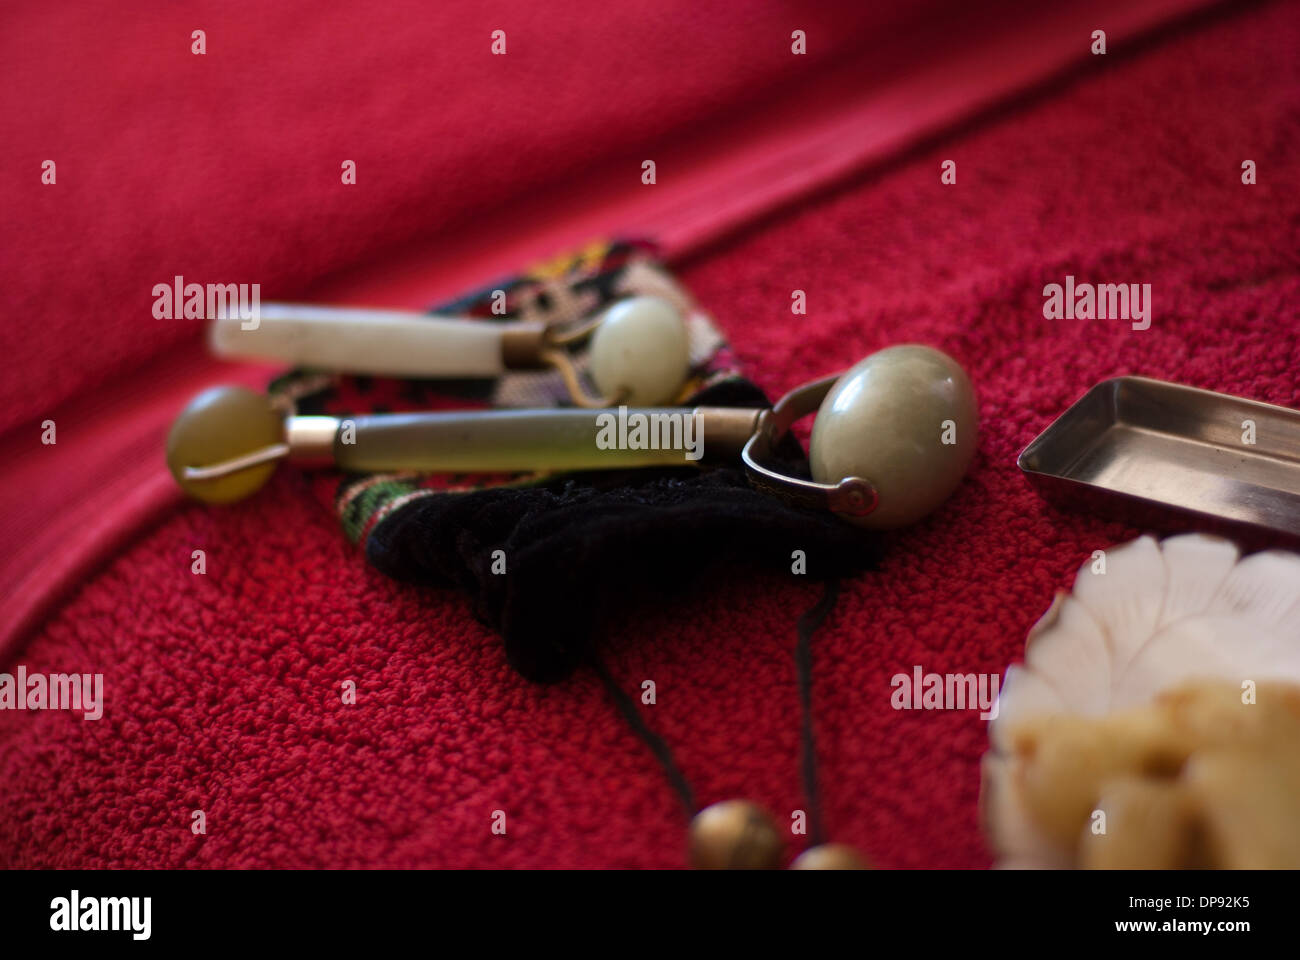 Deux rouleaux de Jade sur une pochette brodée sur un luxueux spa rouge serviette. Banque D'Images